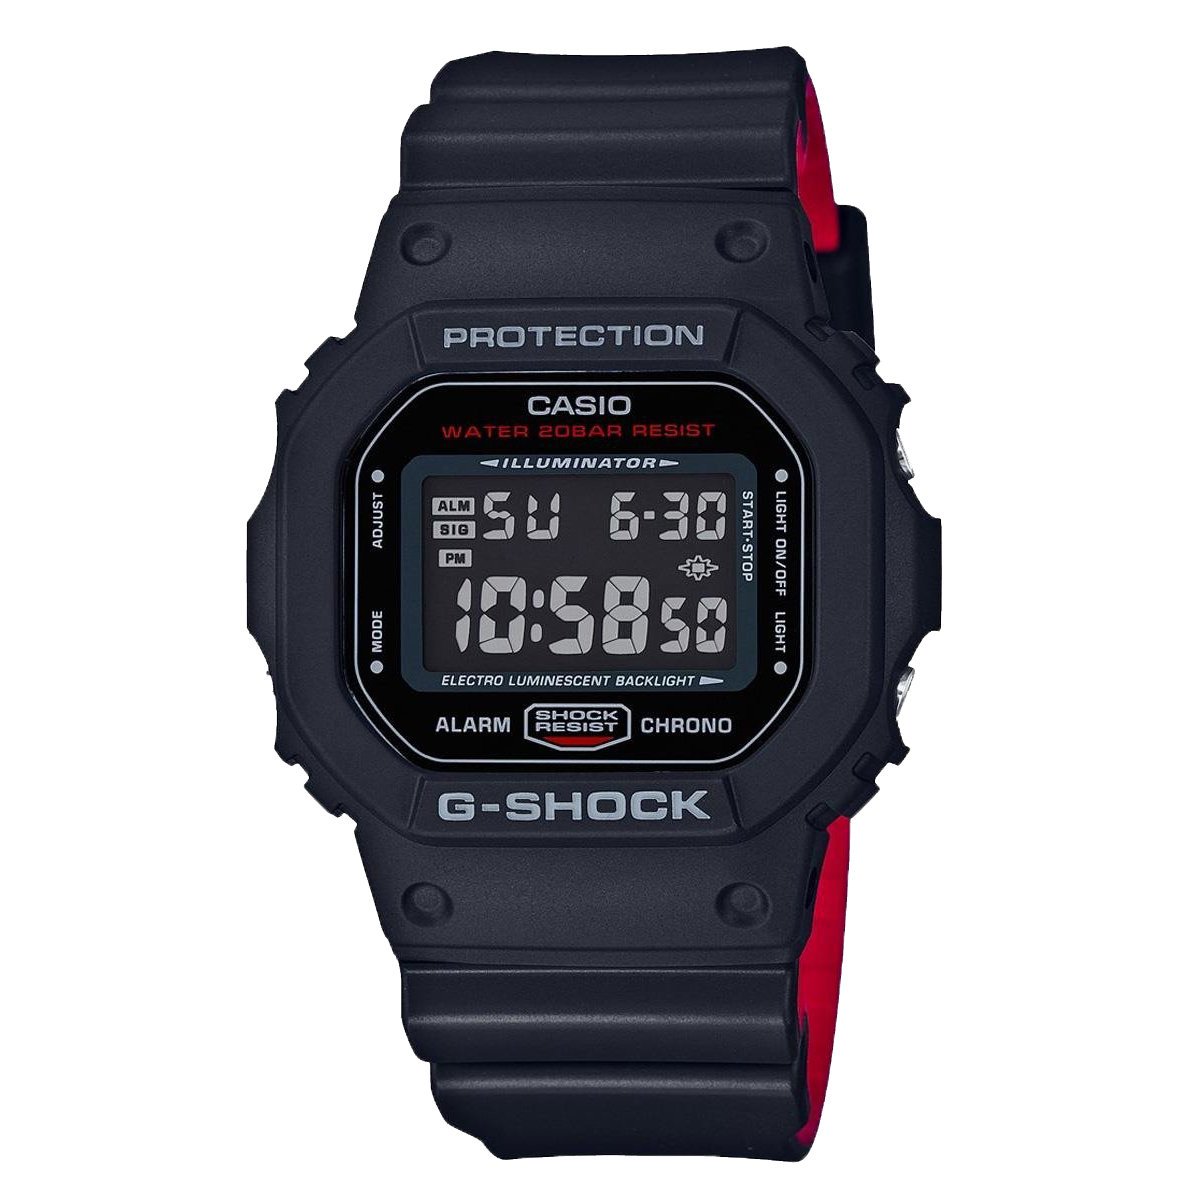 Oryginalny Zegarek Casio G-Shock DW-5600HR-1 300,36 zł - Kaktus24.pl